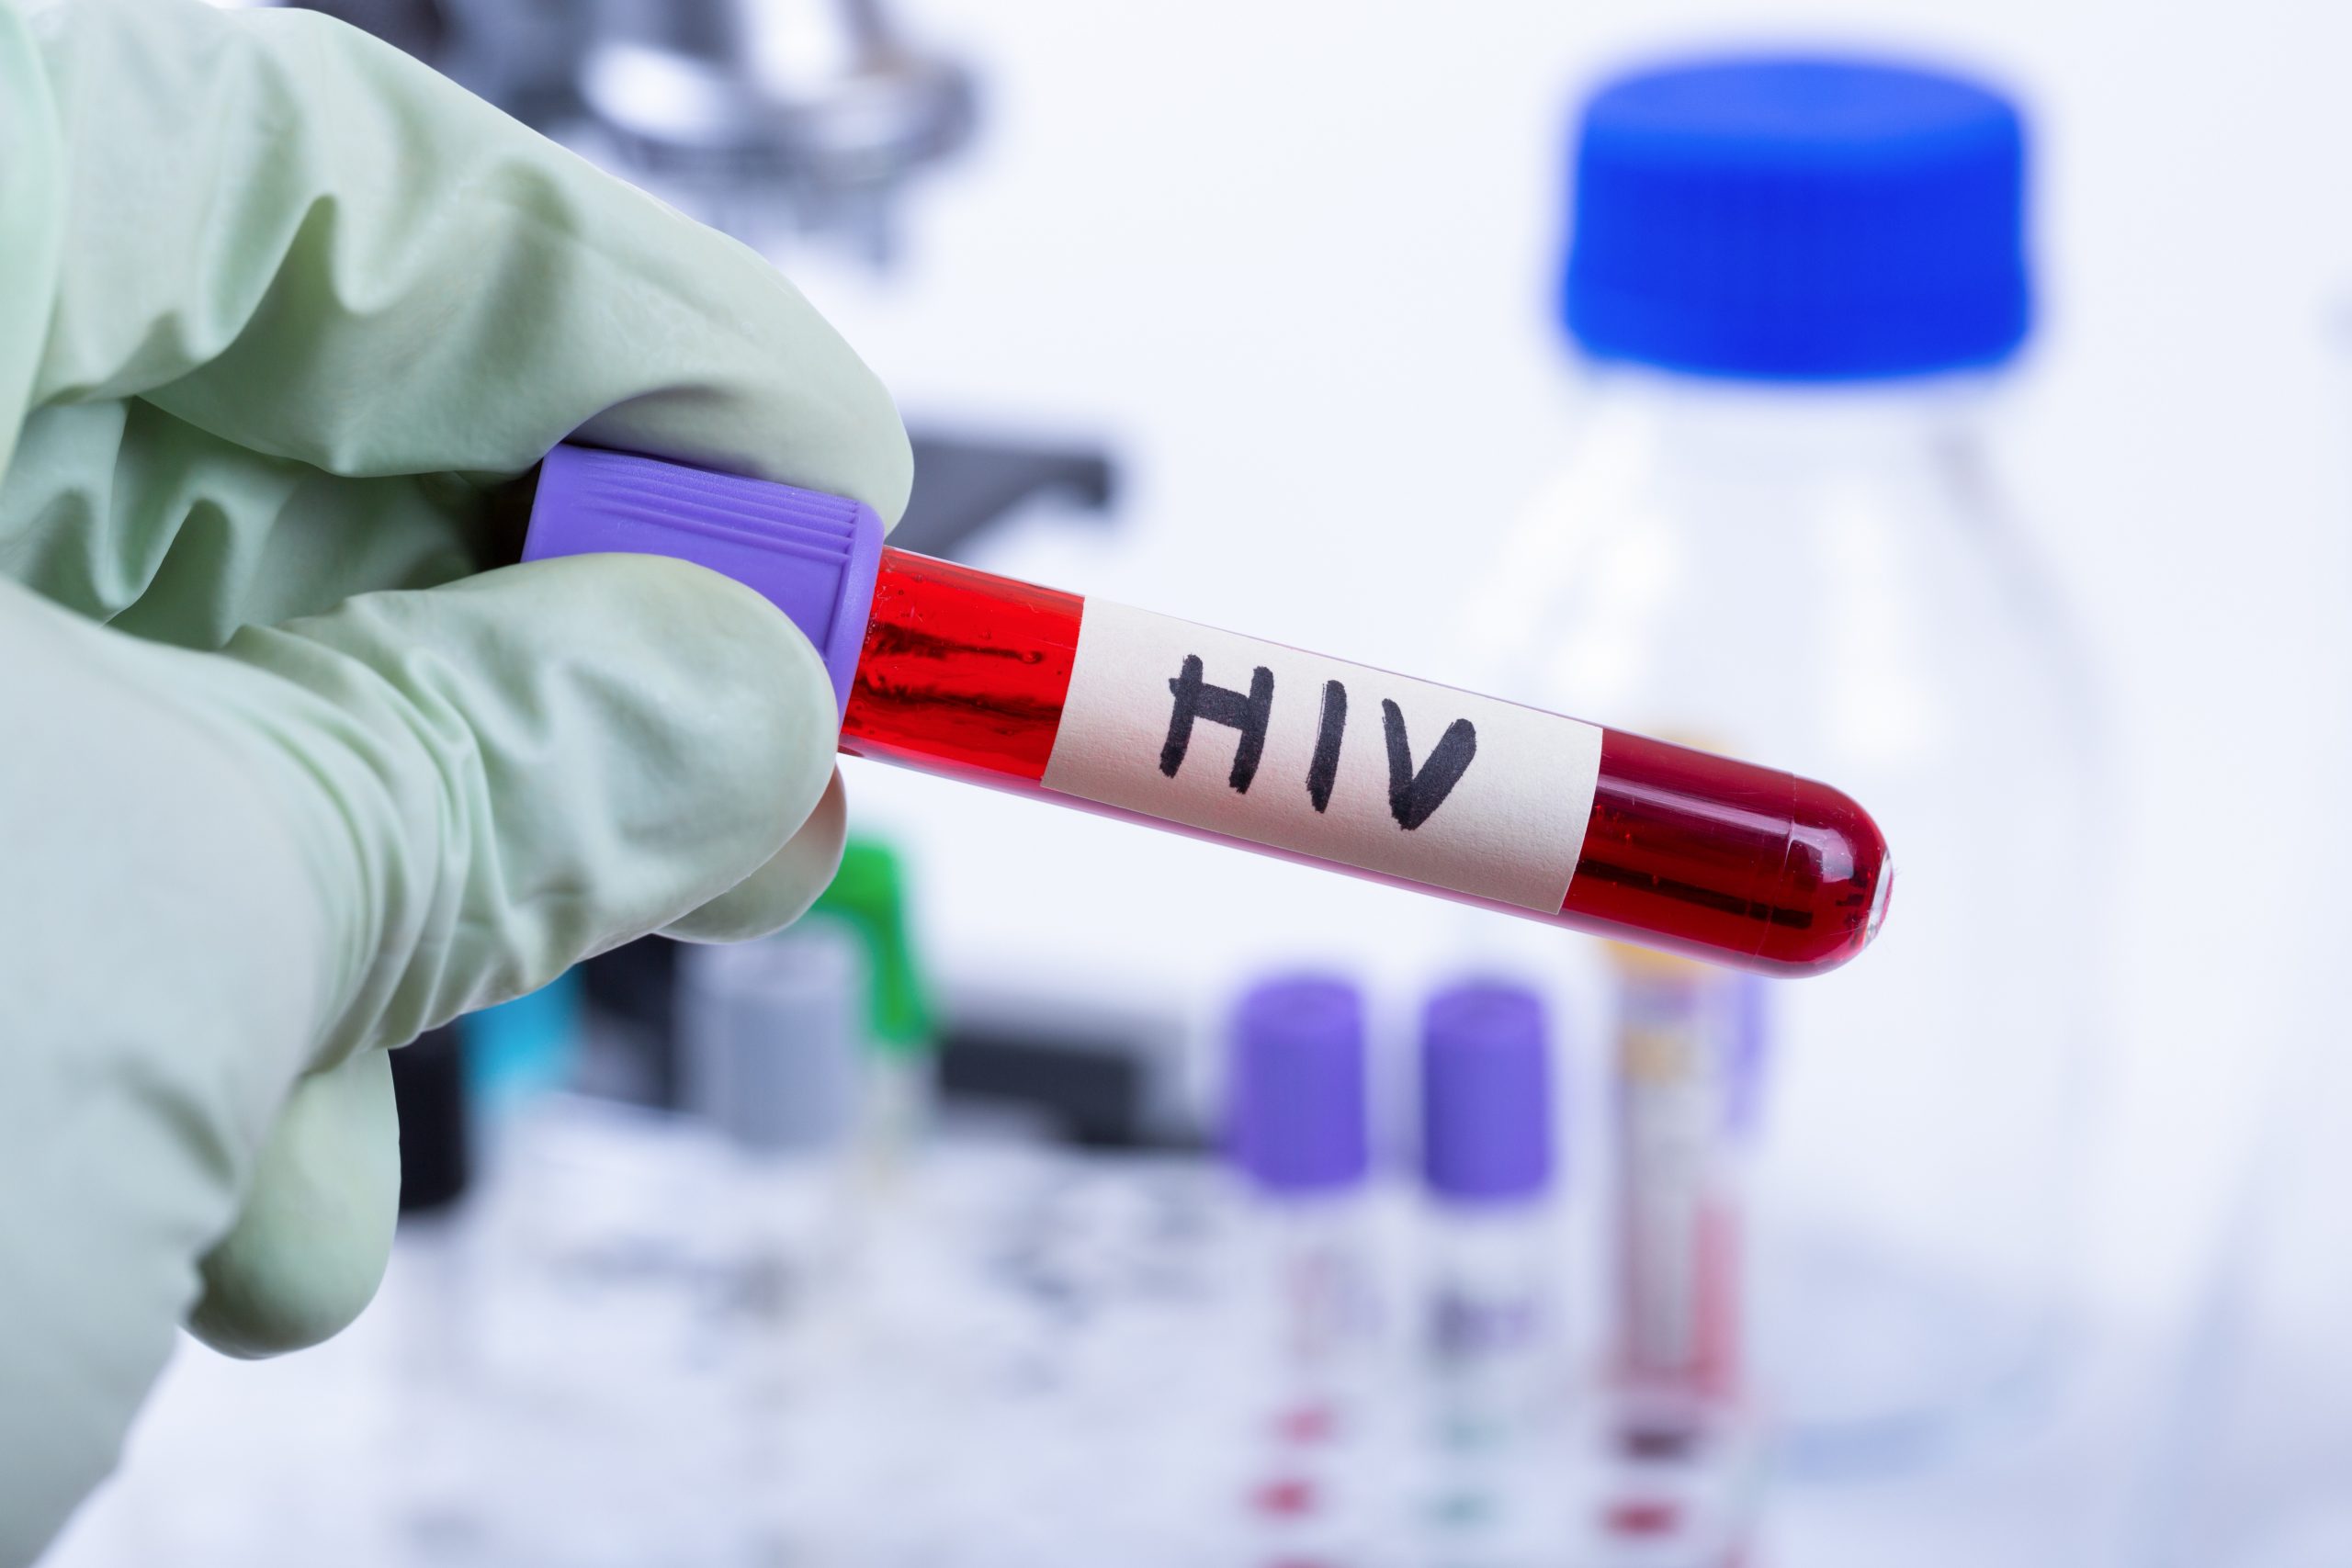 Efficacité de traitement contre le VIH : le dolutégravir n’est pas inférieur à l’éfavirenz au terme de 96 semaines d’étude